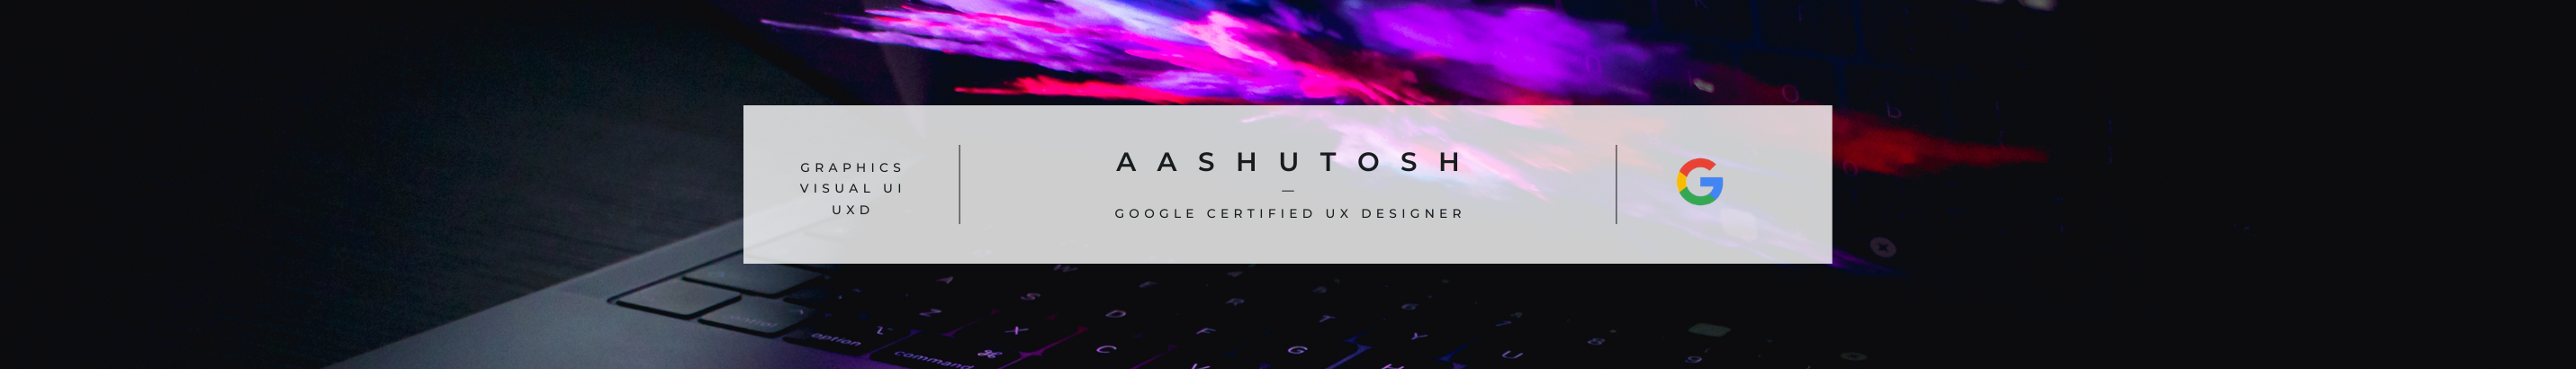 Aashutosh . のプロファイルバナー